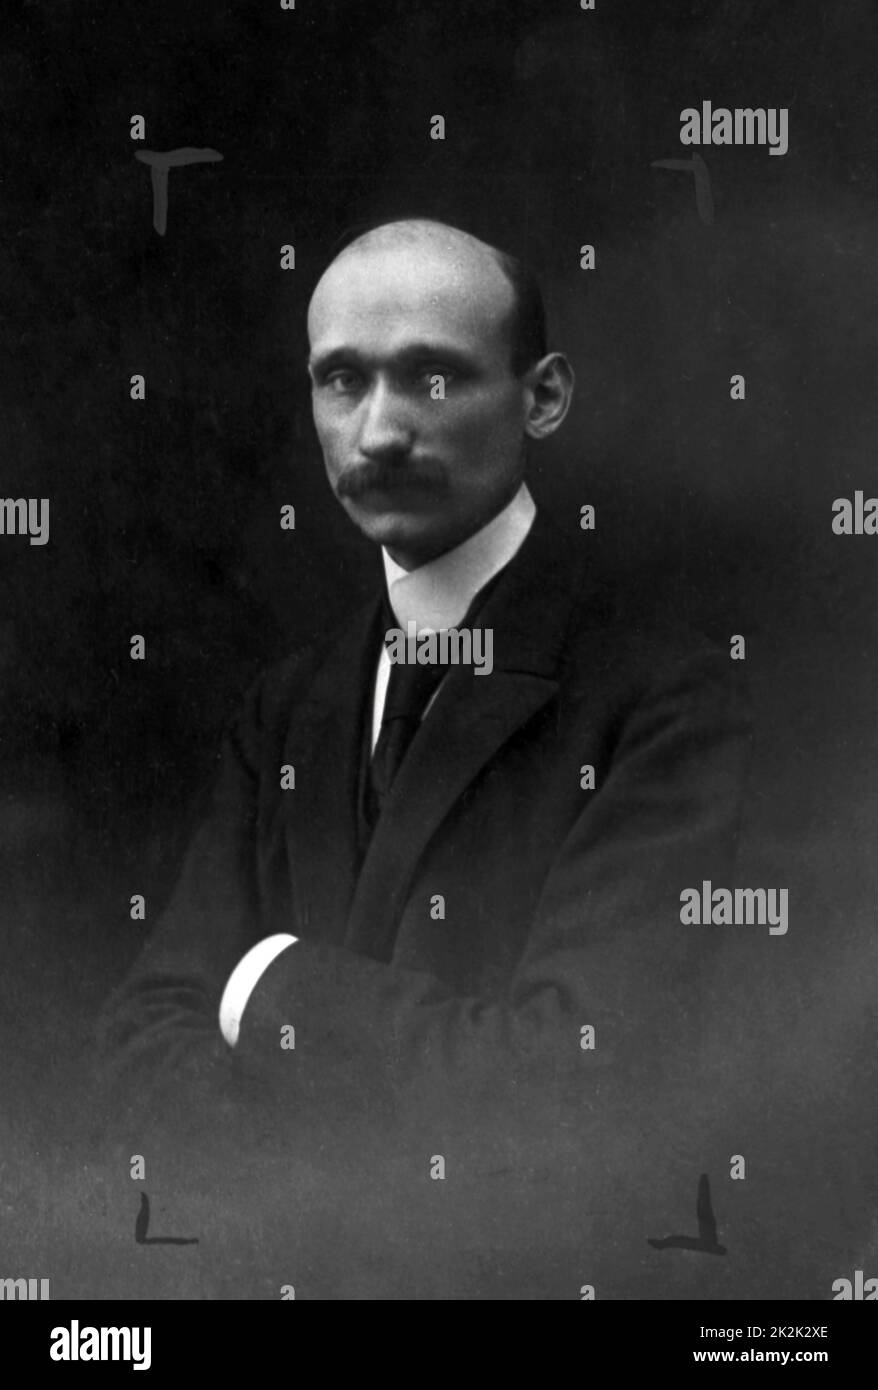 Offizielles Porträt von Robert Schuman über seine Wahl zum 'Chambre bleu Horizon' (Horizon Blue Chamber) (Spitzname der neuen Versammlung im Jahr 1919 in Bezug auf die horizonblaue Farbe der Uniformen der vielen Veteranen, die dort saßen). Dezember 1919 Stockfoto